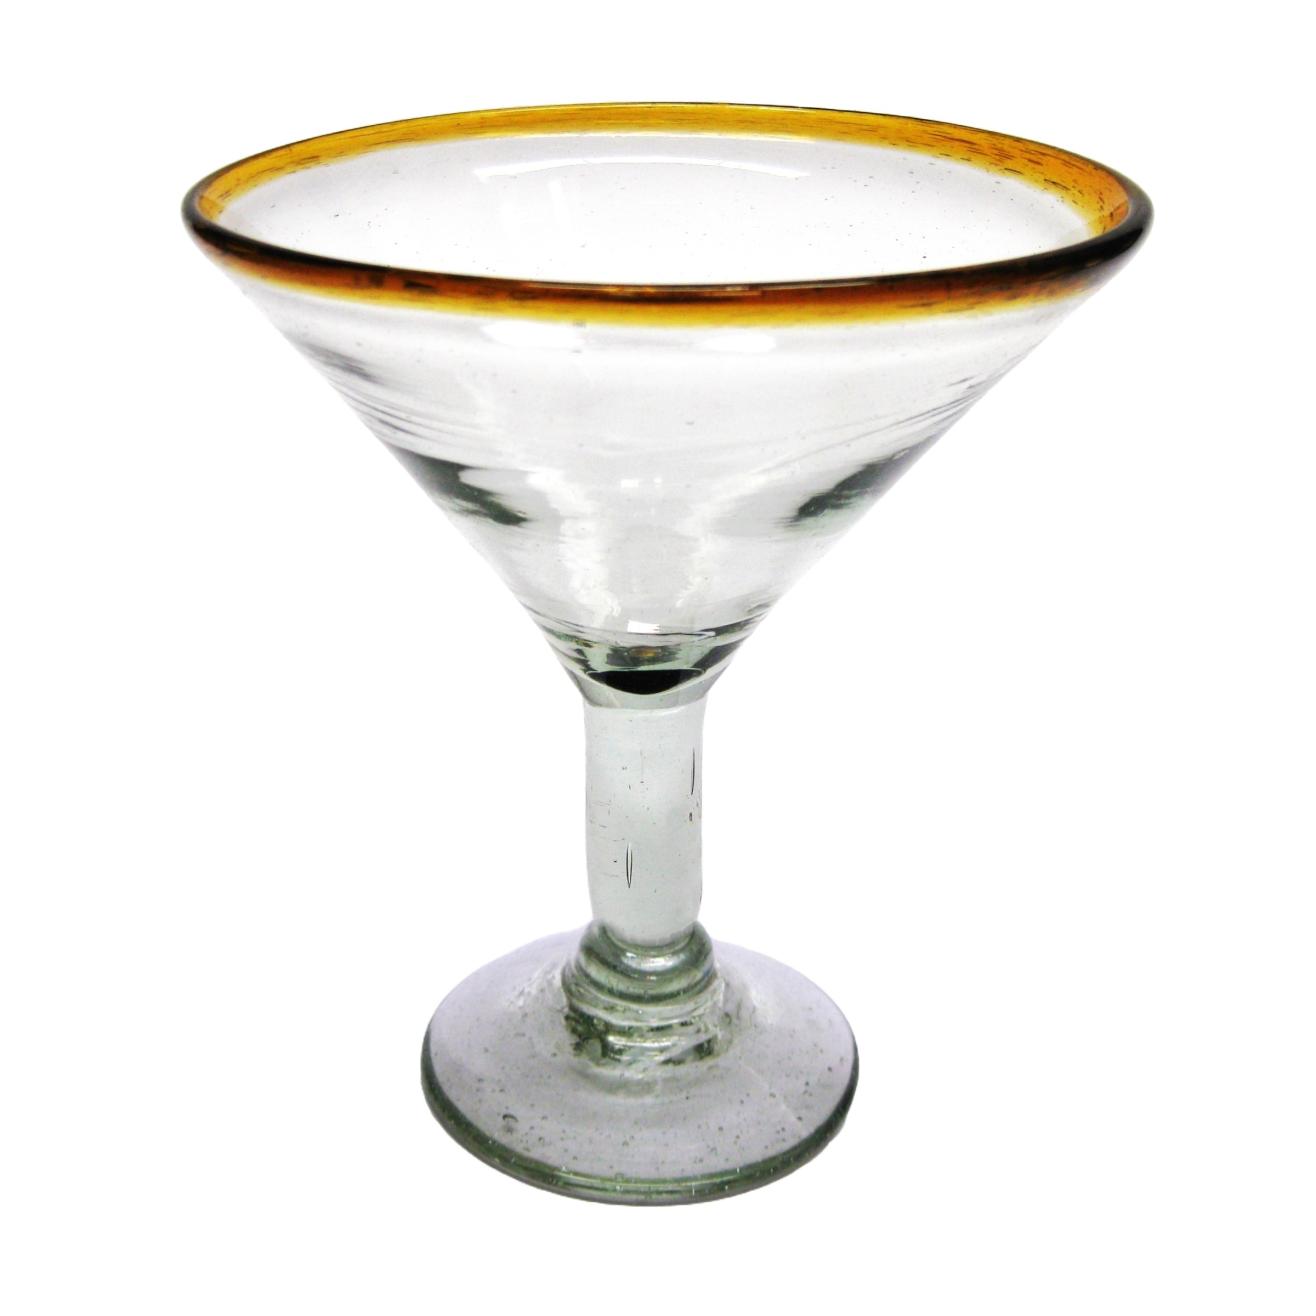 Copas para Margarita al Mayoreo / copas para martini con borde color ámbar / Éste hermoso juego de copas para martini le dará un toque clásico mexicano a sus fiestas.